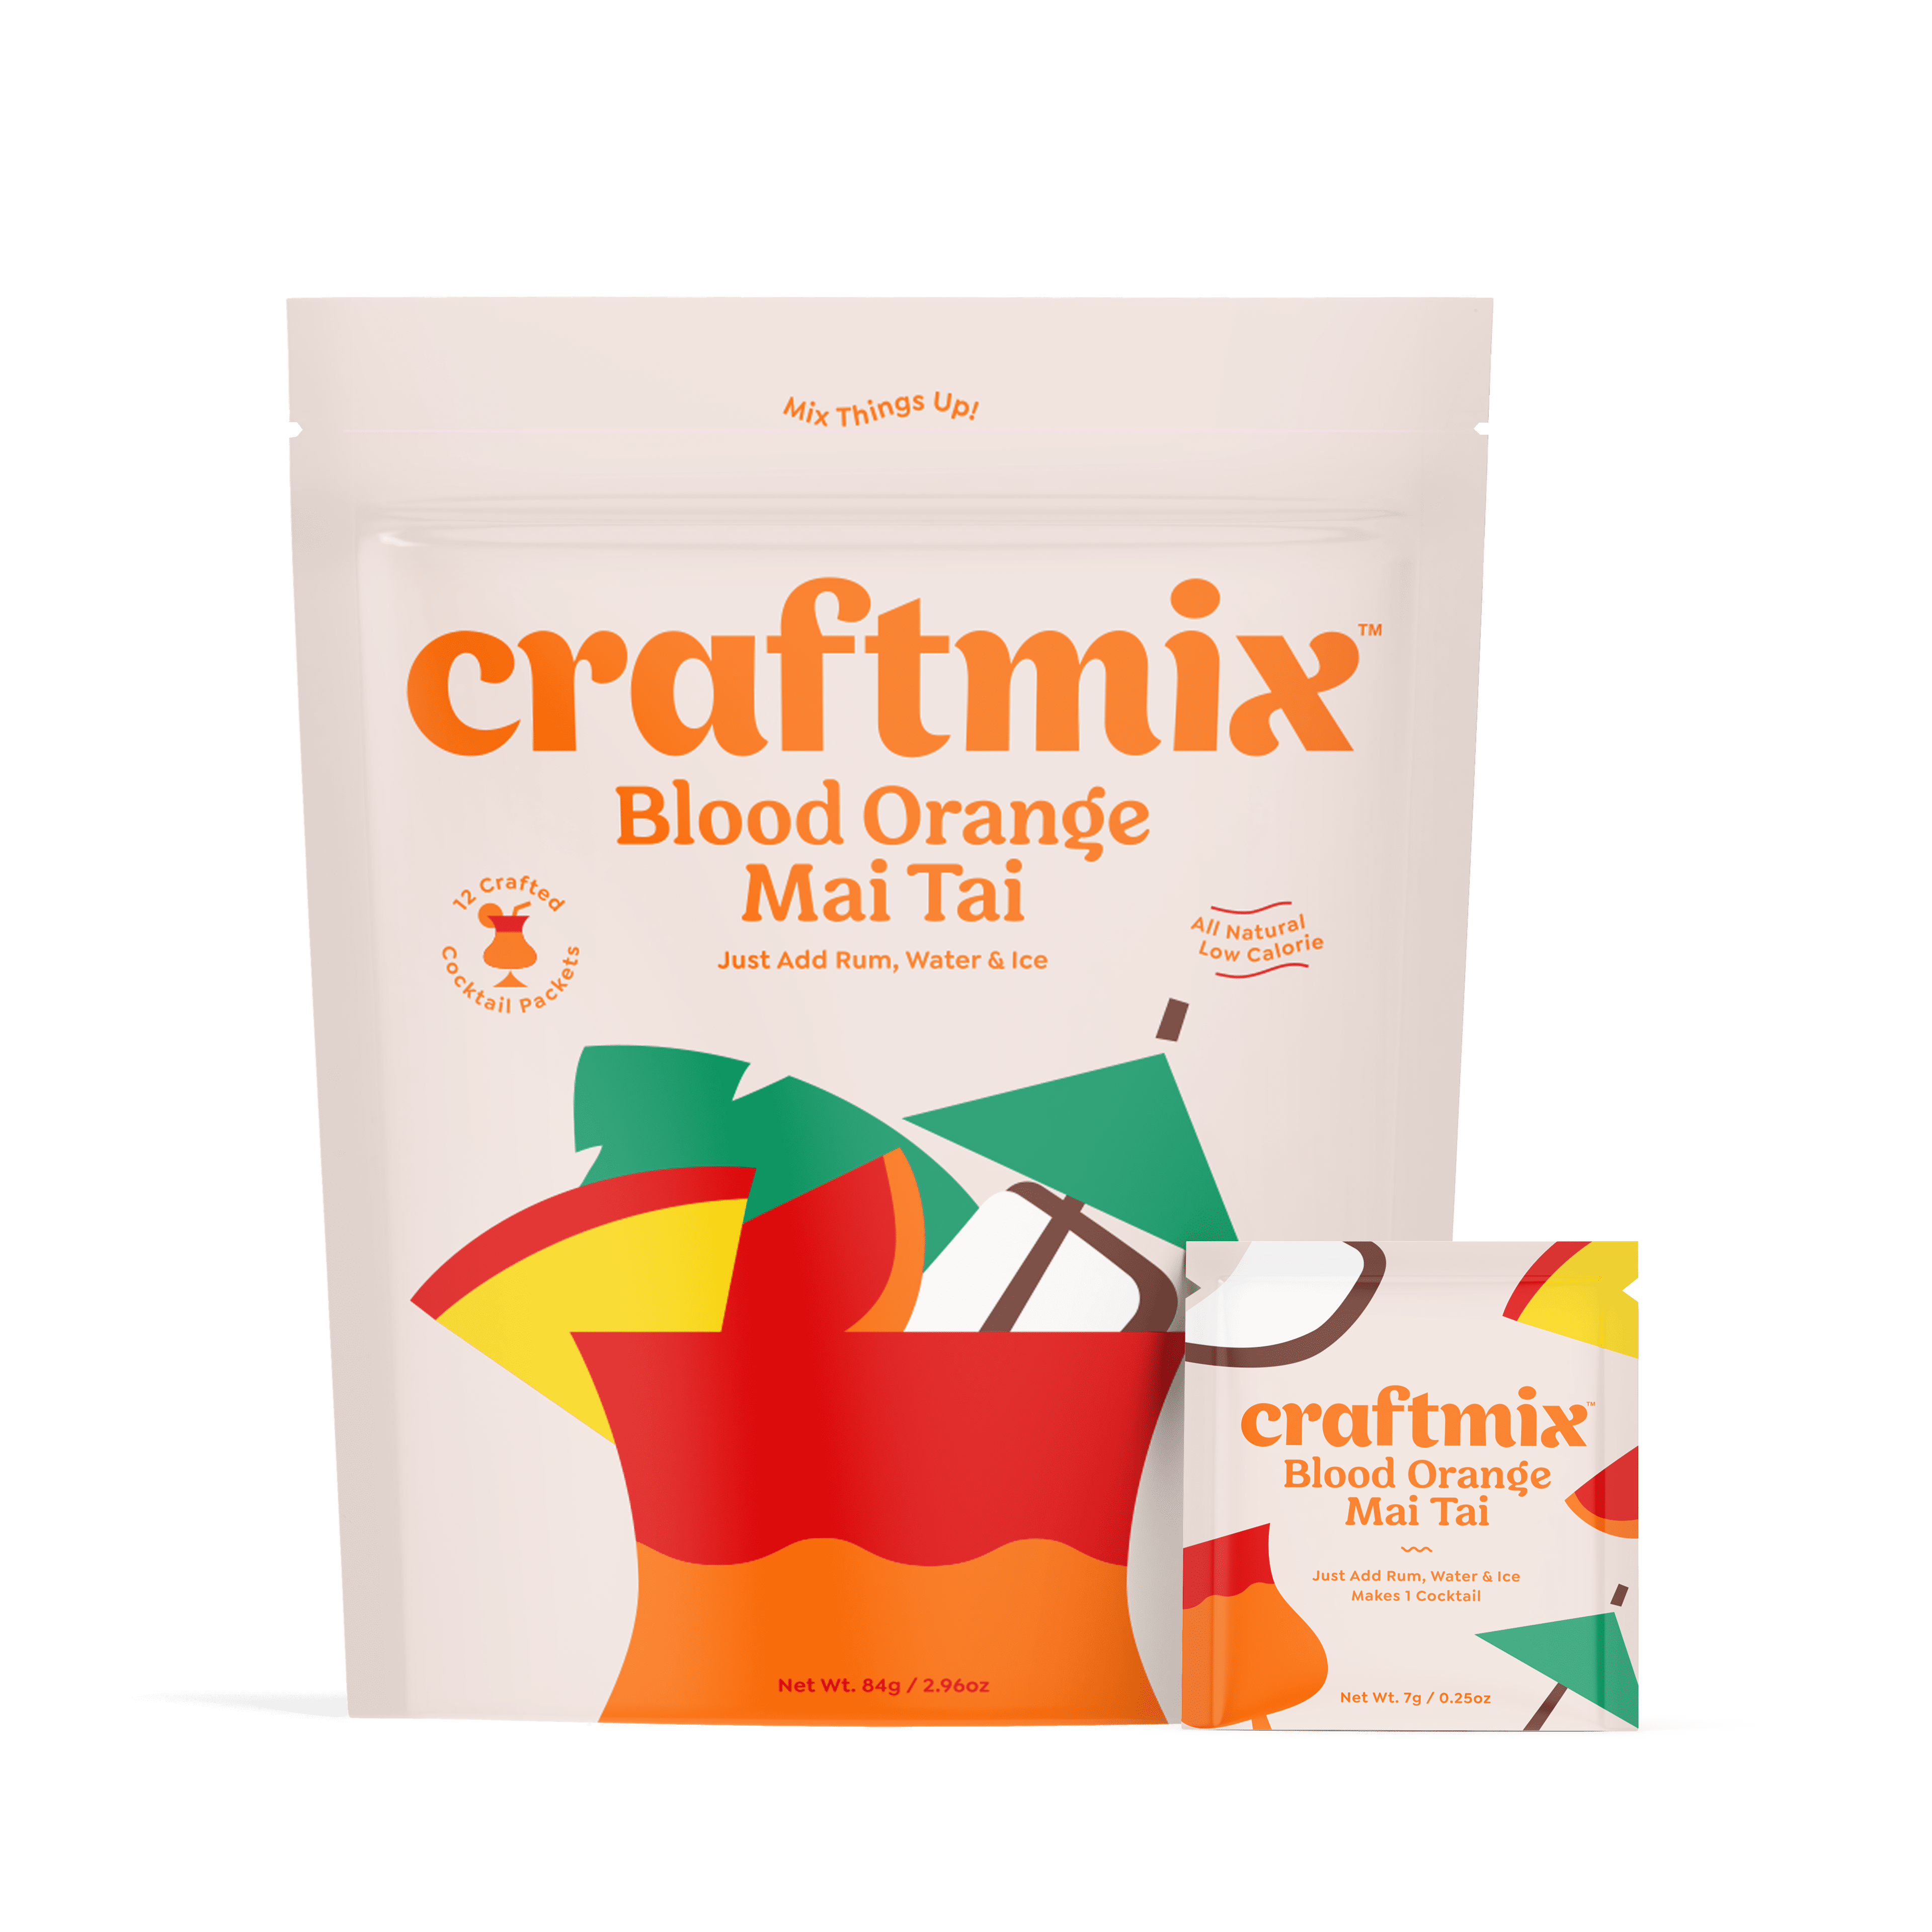 Craftmix Blood Orange Mai Tai 12 Pack 12 units per case 3.0 oz